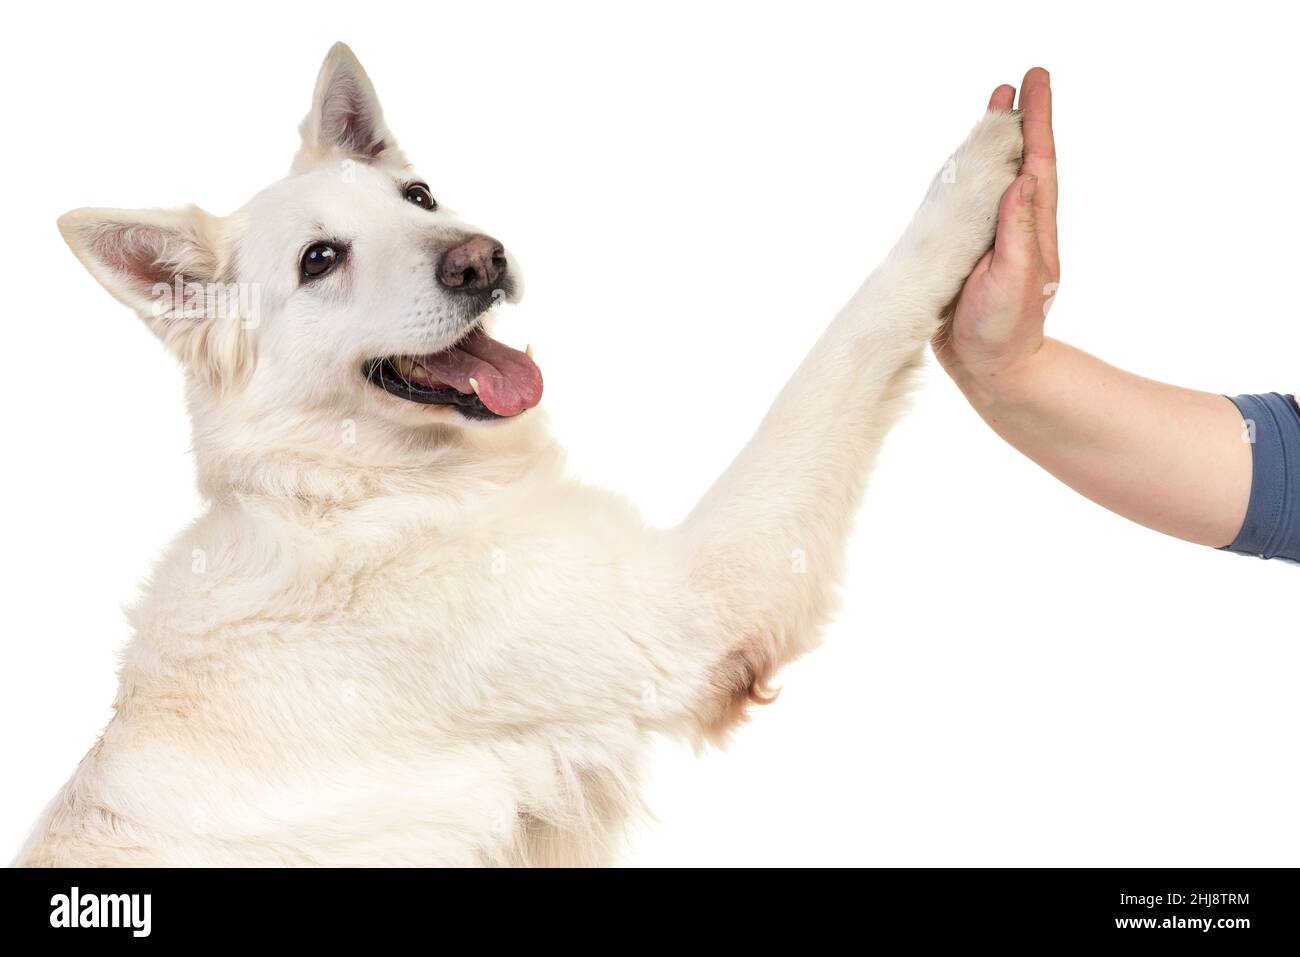 Portrait de chien berger blanc suisse face caméra isolé sur un fond blanc donnant une forte 5 Banque D'Images